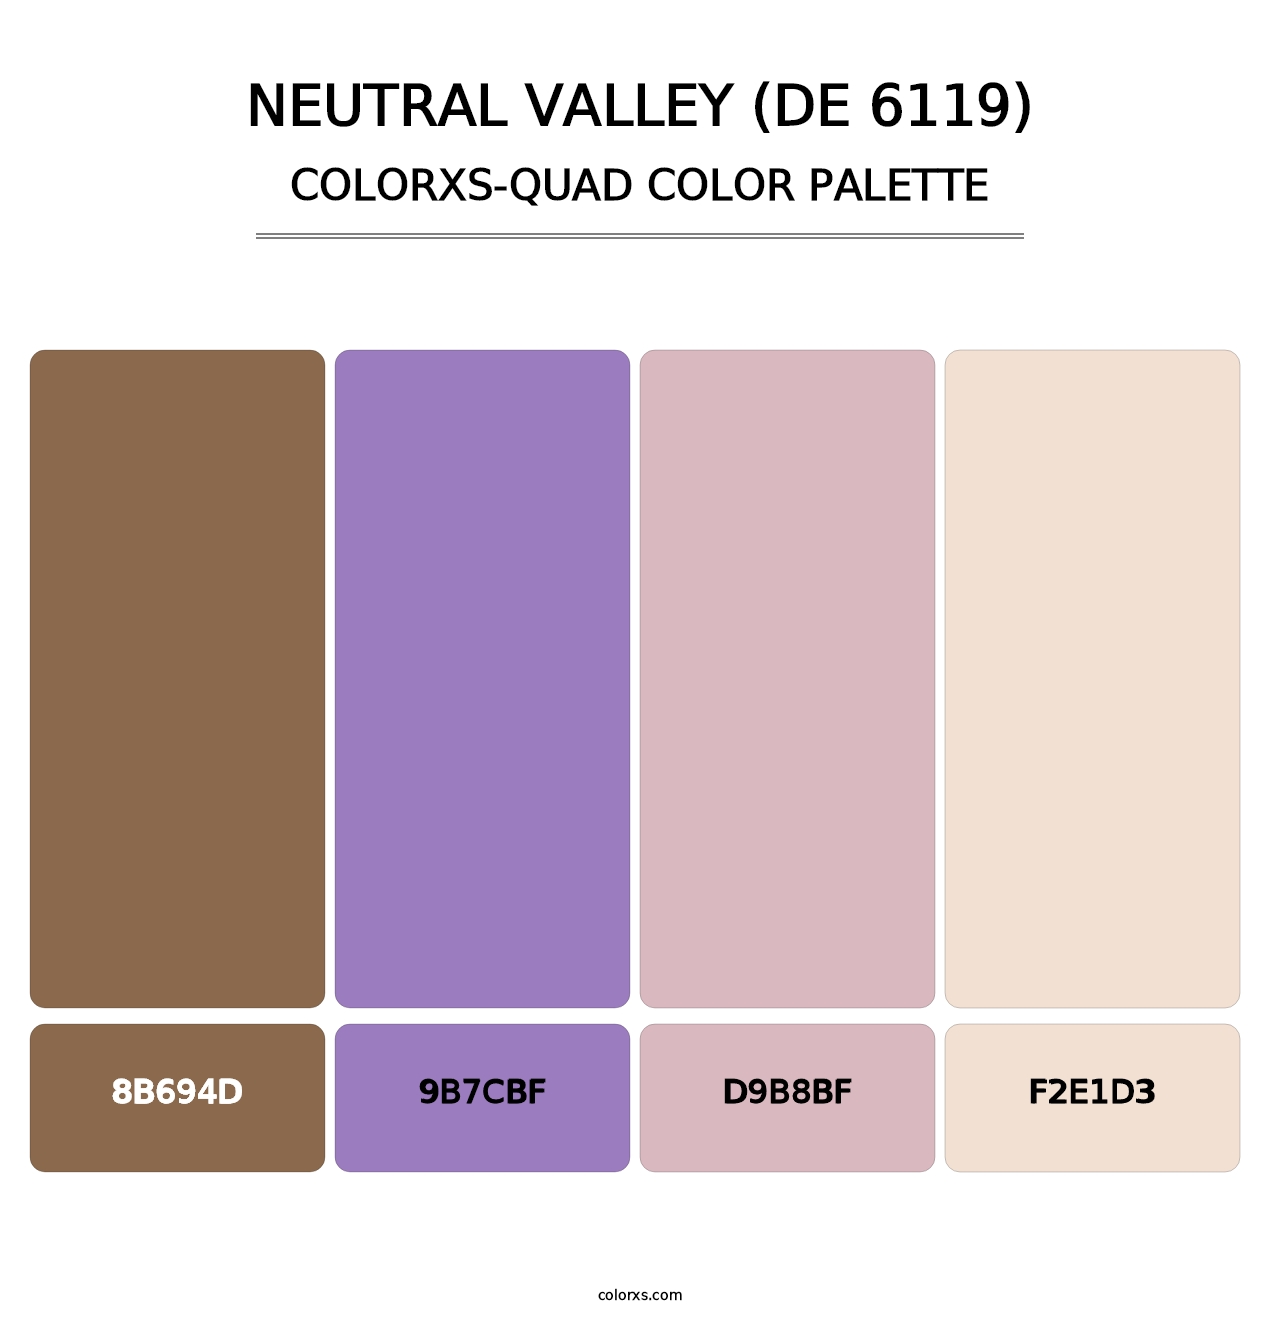 Neutral Valley (DE 6119) - Colorxs Quad Palette